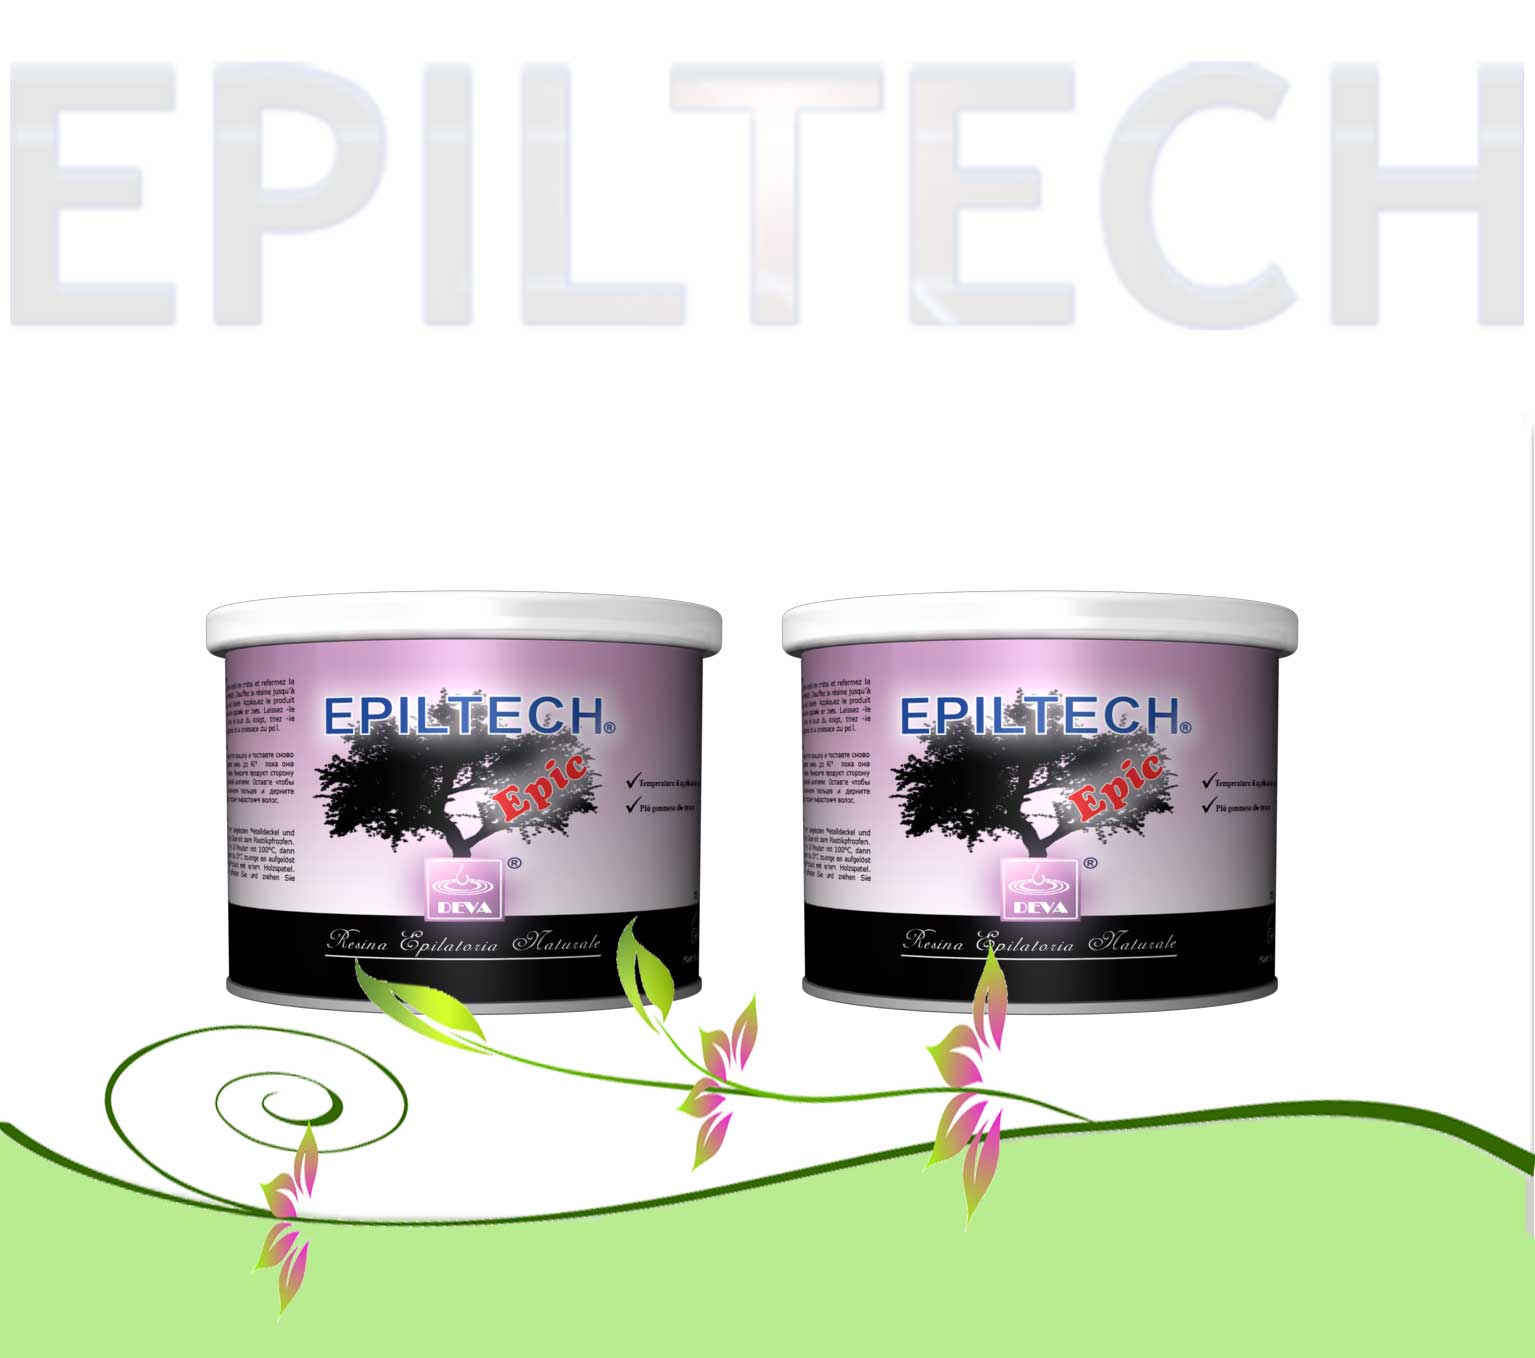 Offerta Epiltech 12